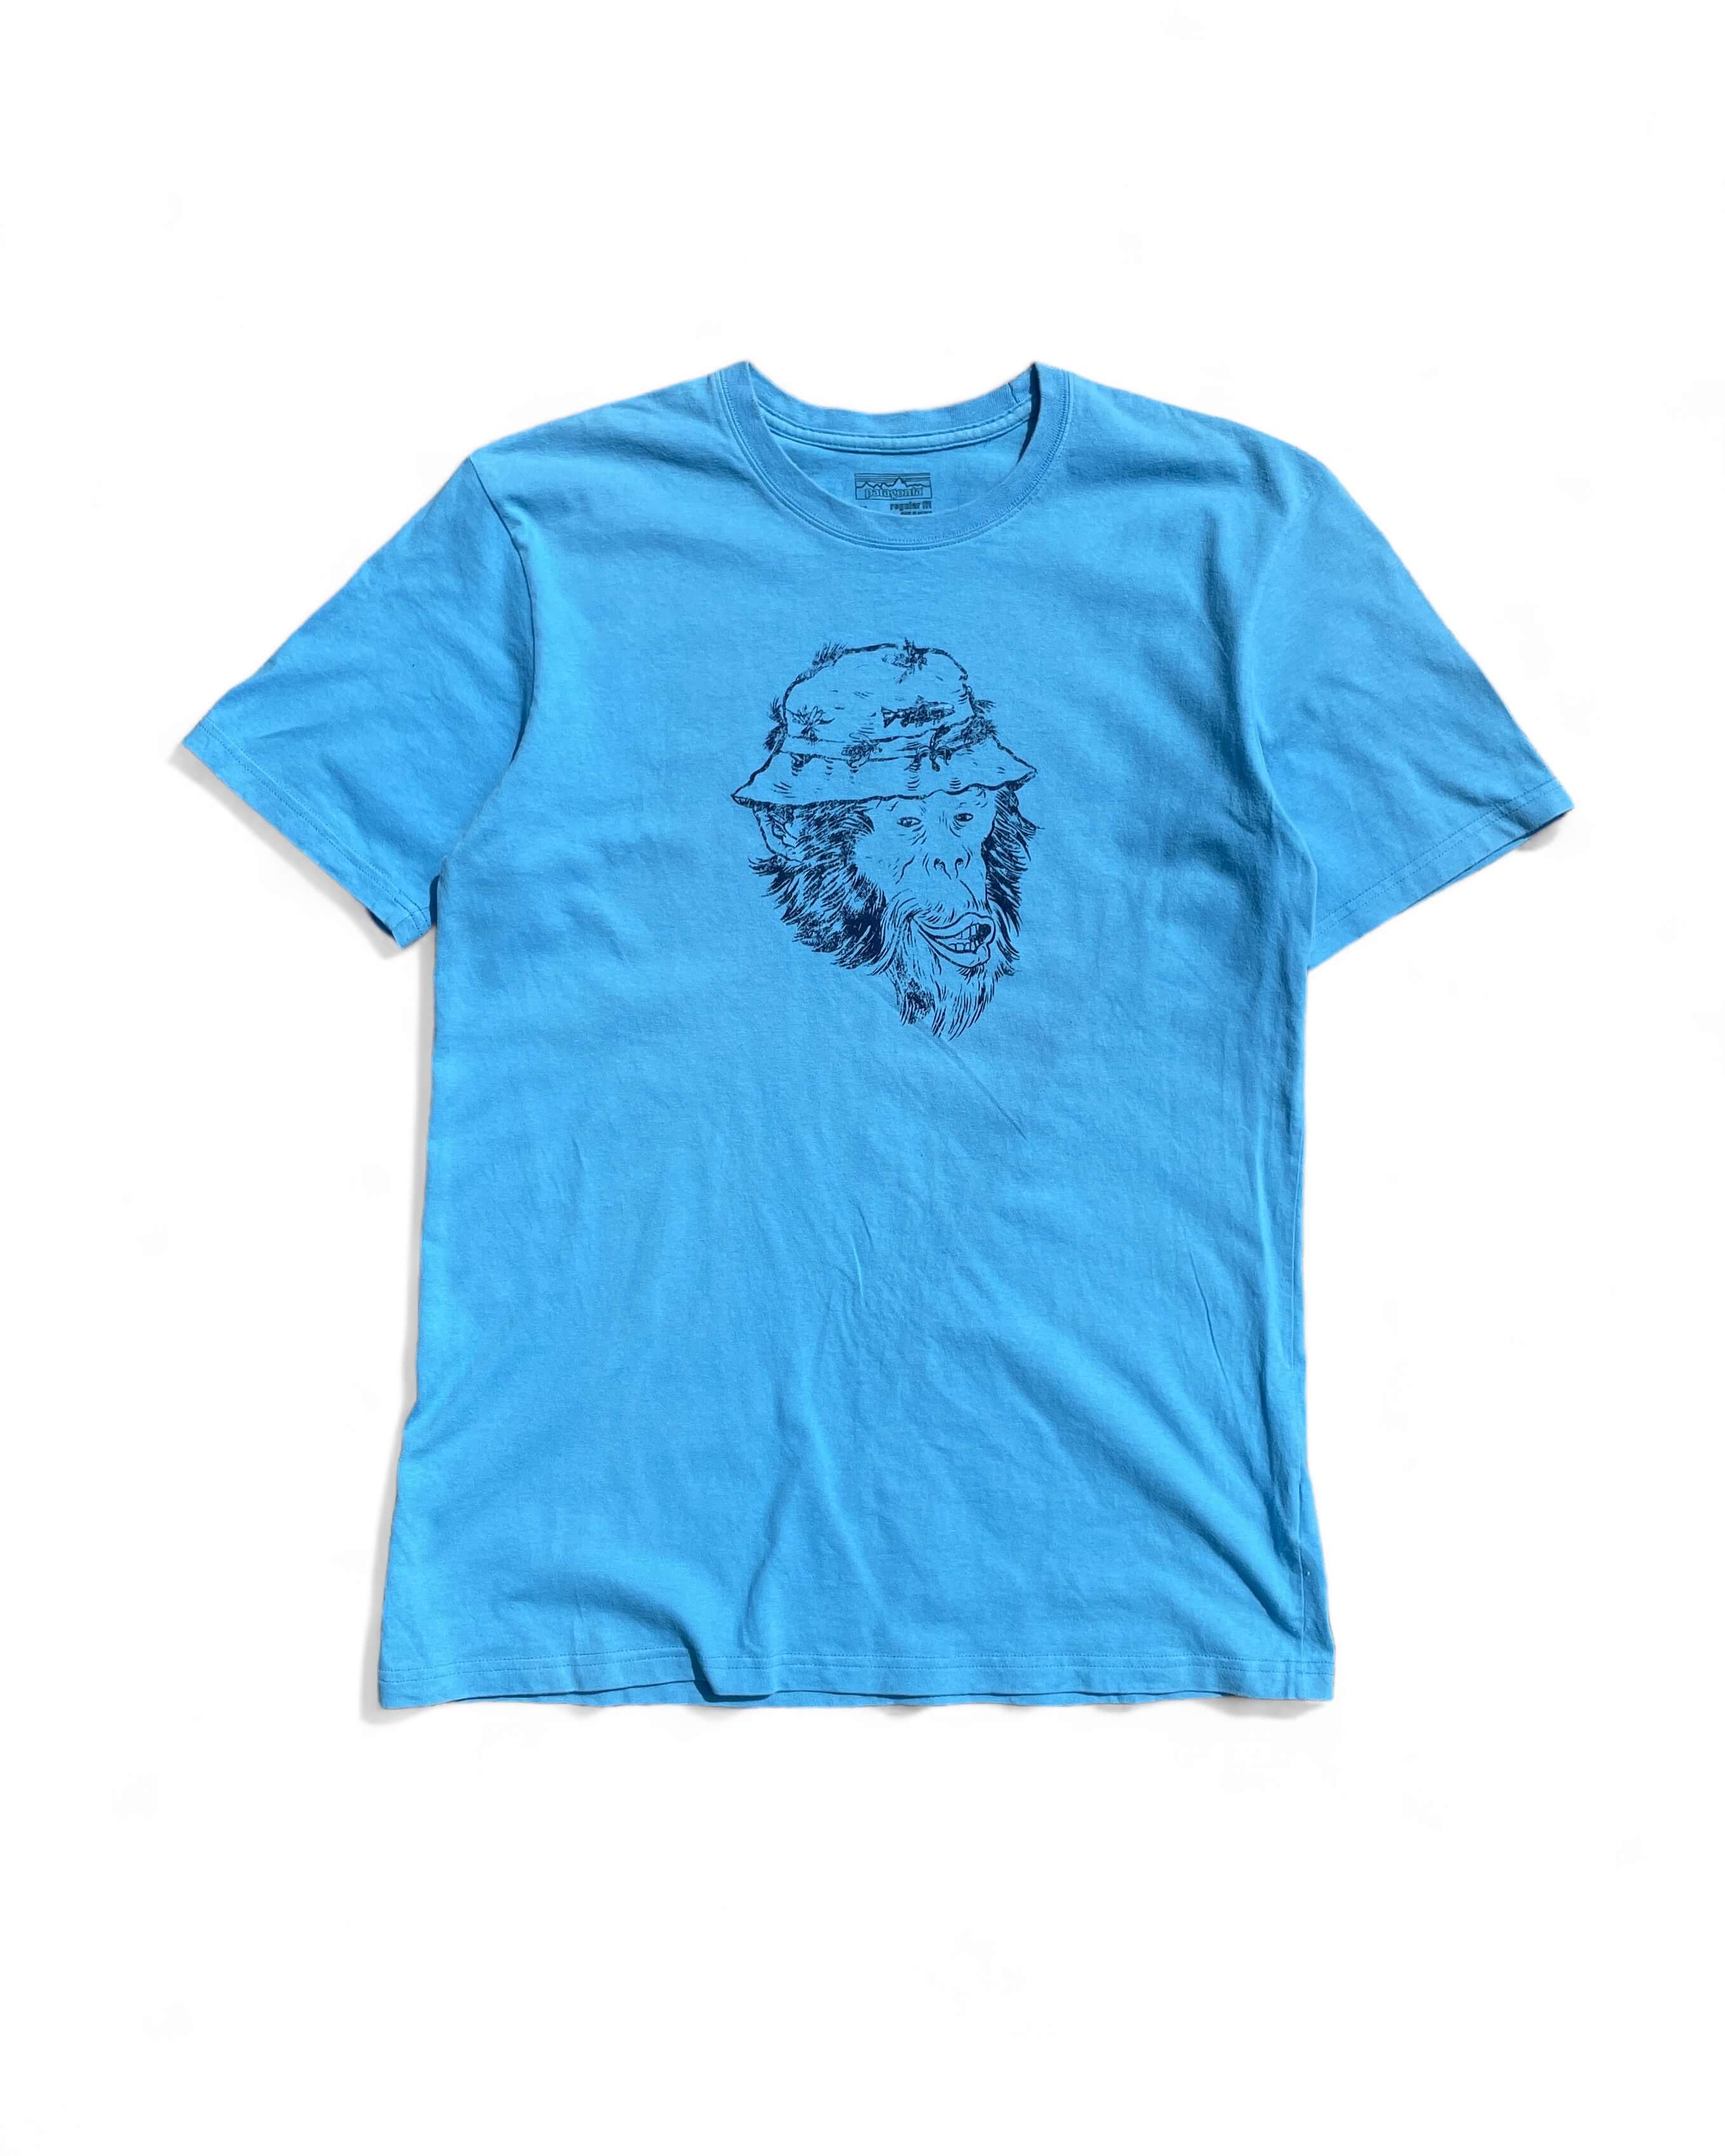 Patagonia Chimpanzee T-shirts